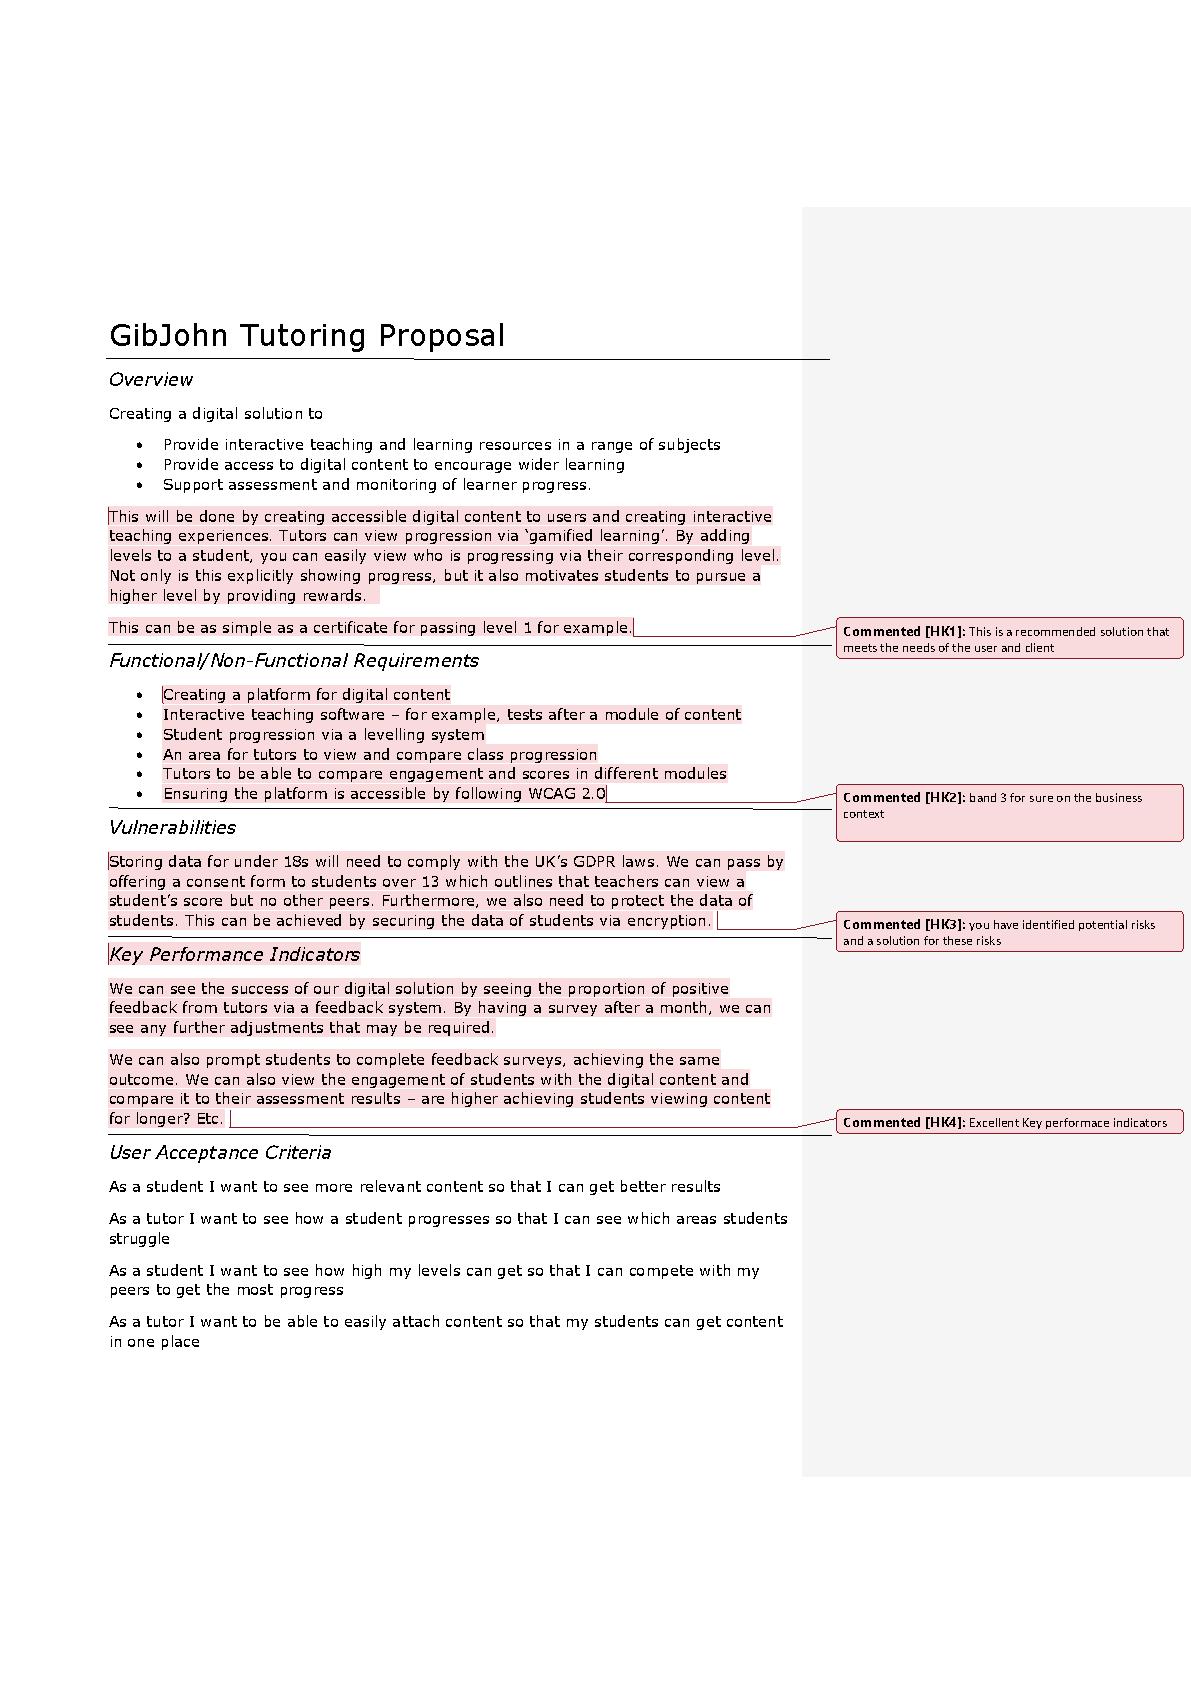 GibJohn Tutoring Proposal.pdf PDF Host